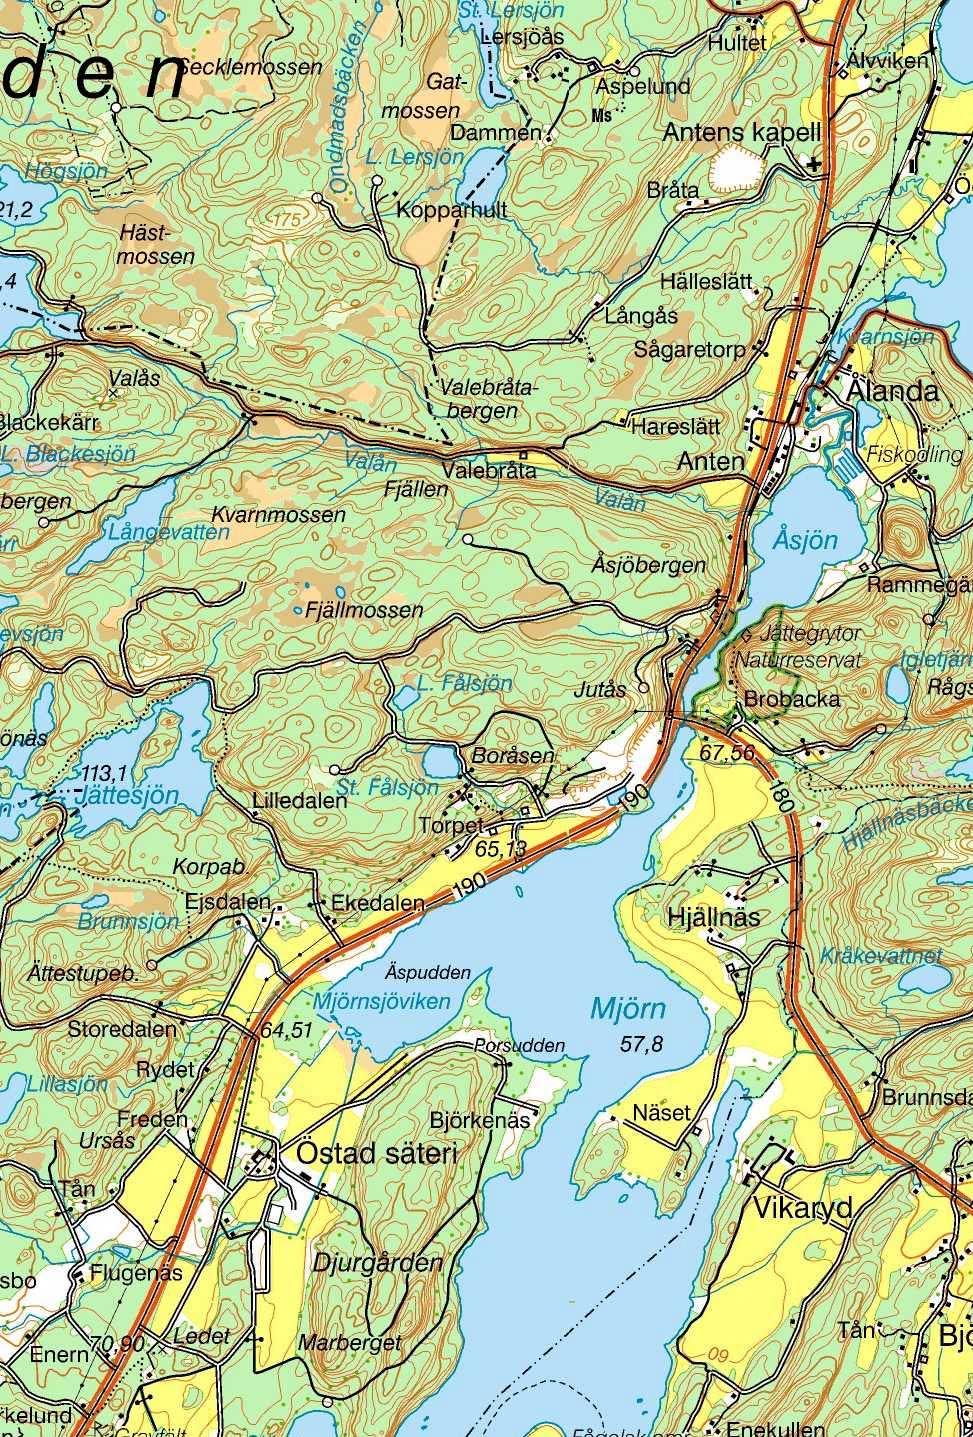 Antens Kapell x x Östads säteri Bakgrundskartor Lantmäteriet, dnr 16-24/188 Figur 1.